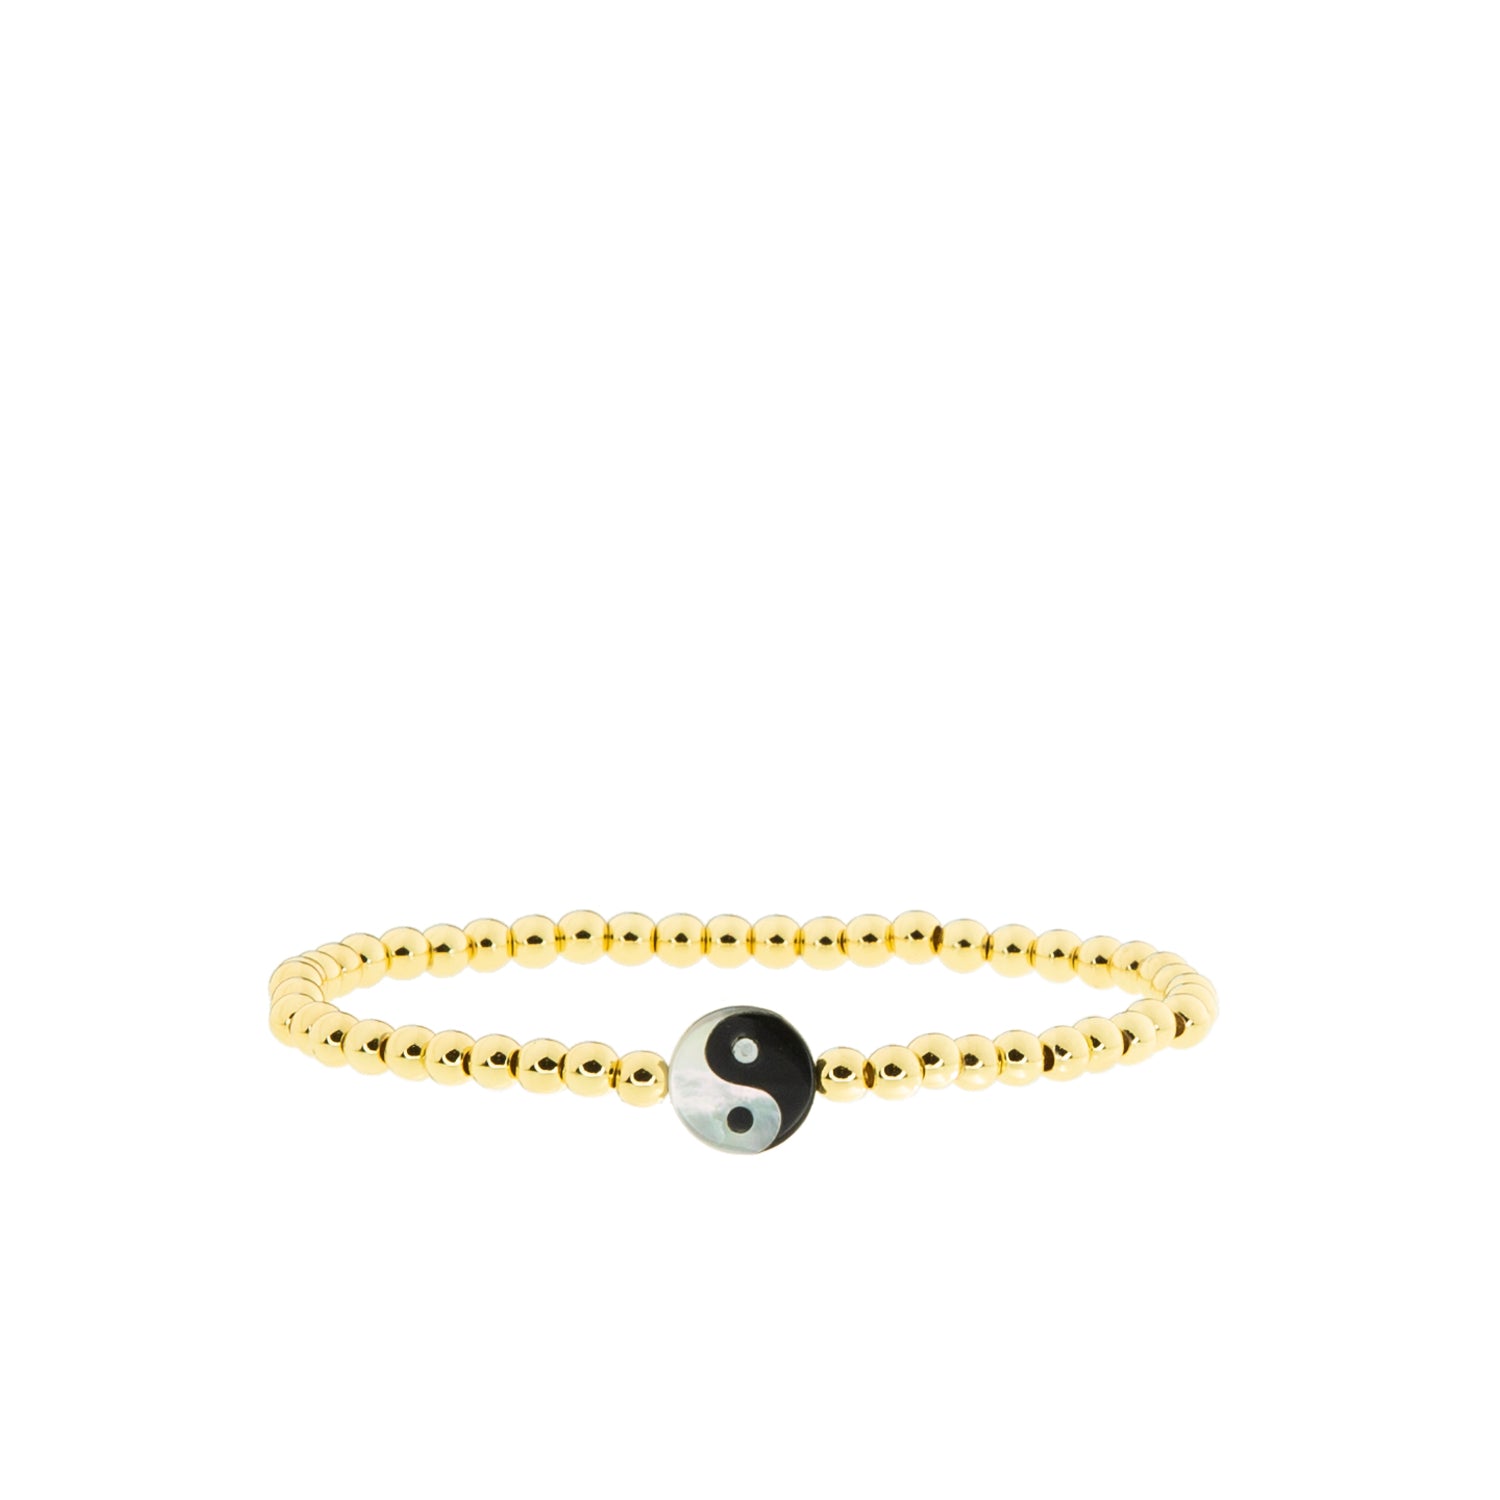 yin yang stretch bracelet